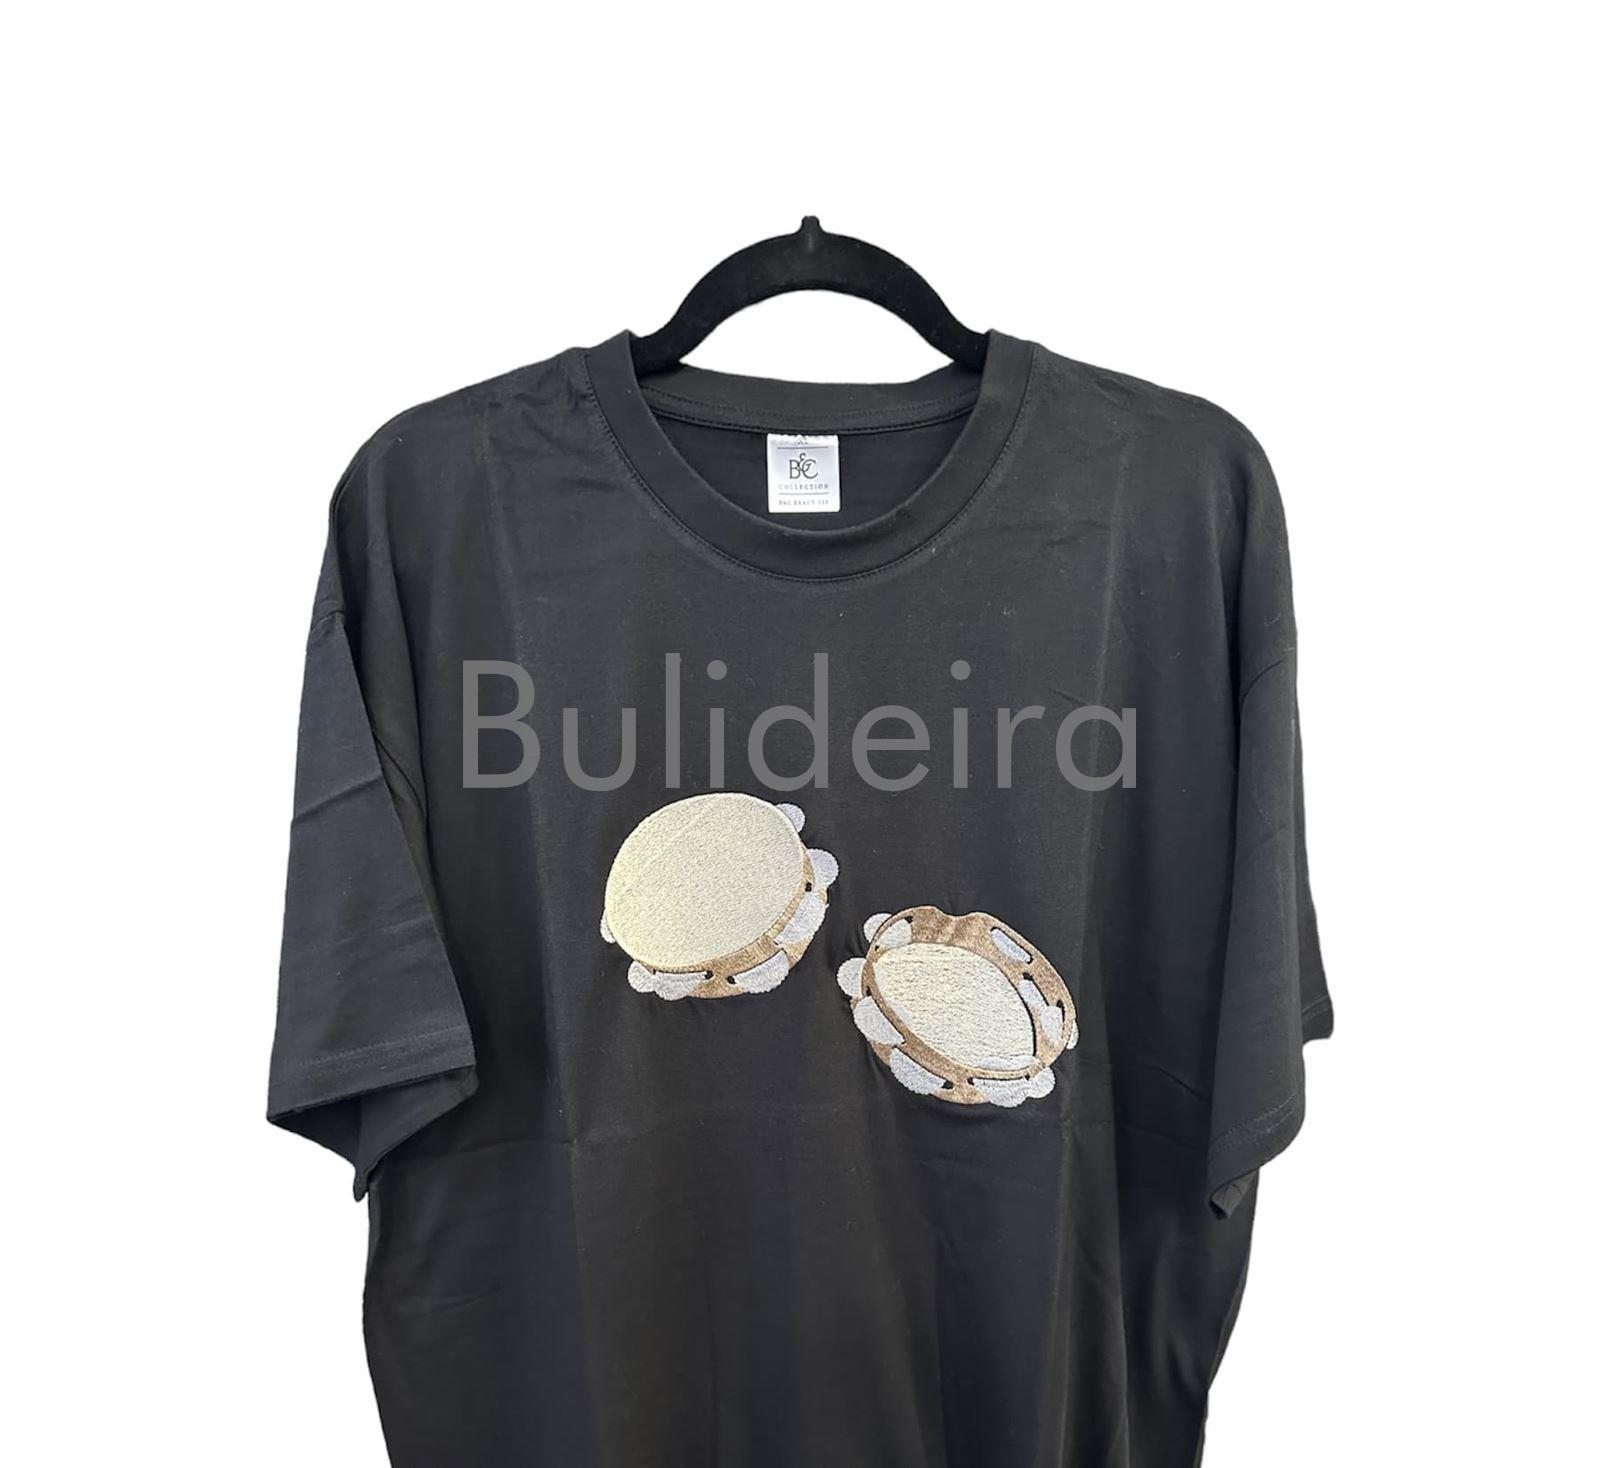 Camiseta bordada pandeiretas - Imaxe 1